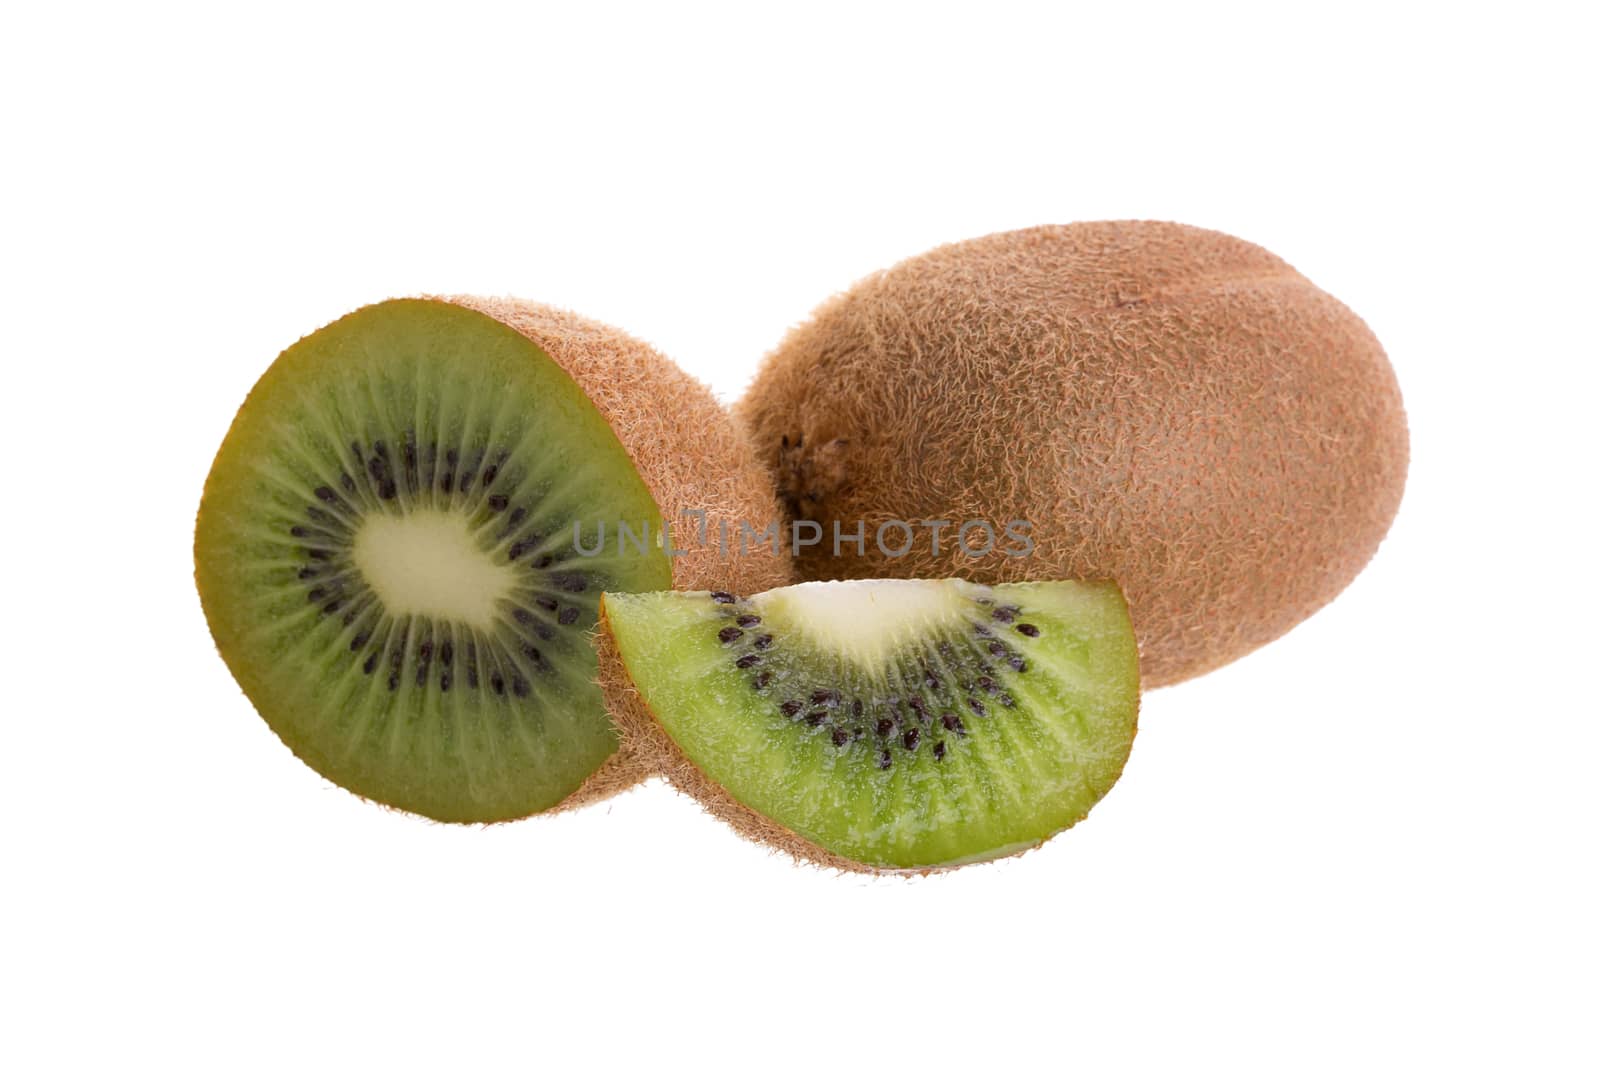 Kiwi fruit and kiwi sliced isolated on a white background.